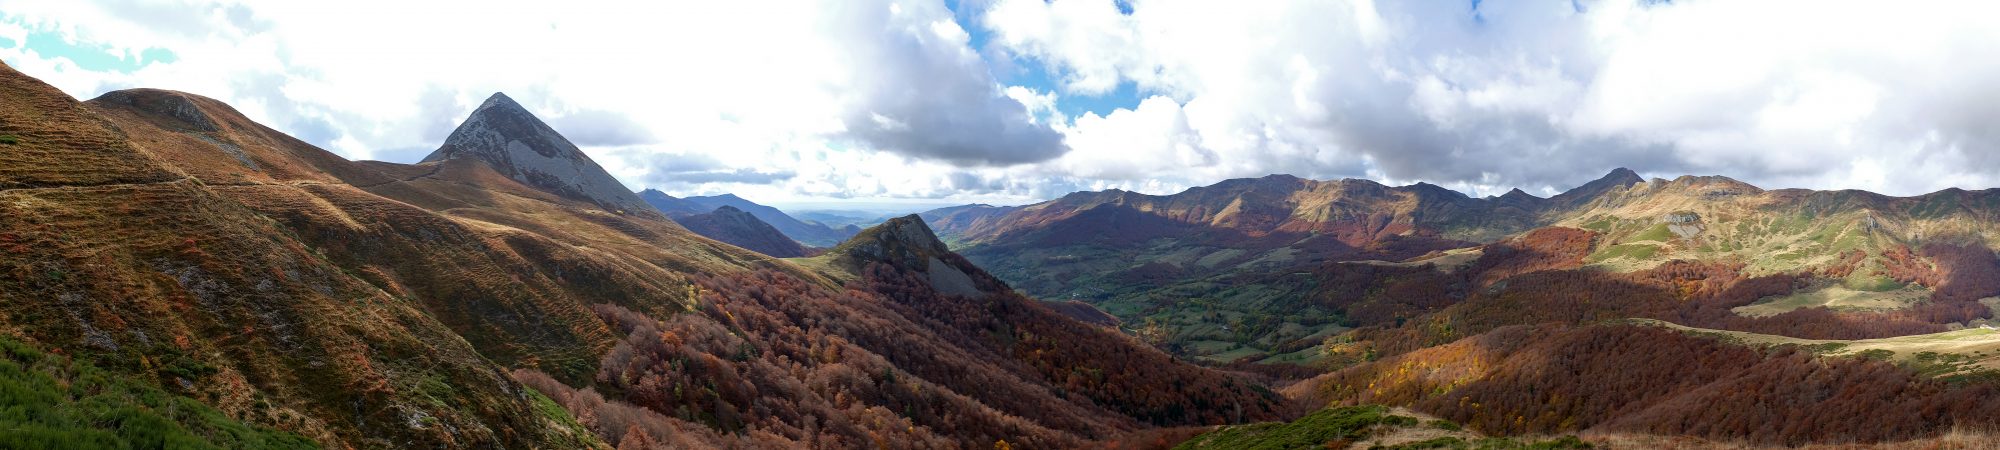 L'automne sur les crêtes du Cantal. Photo ©P.Leroy